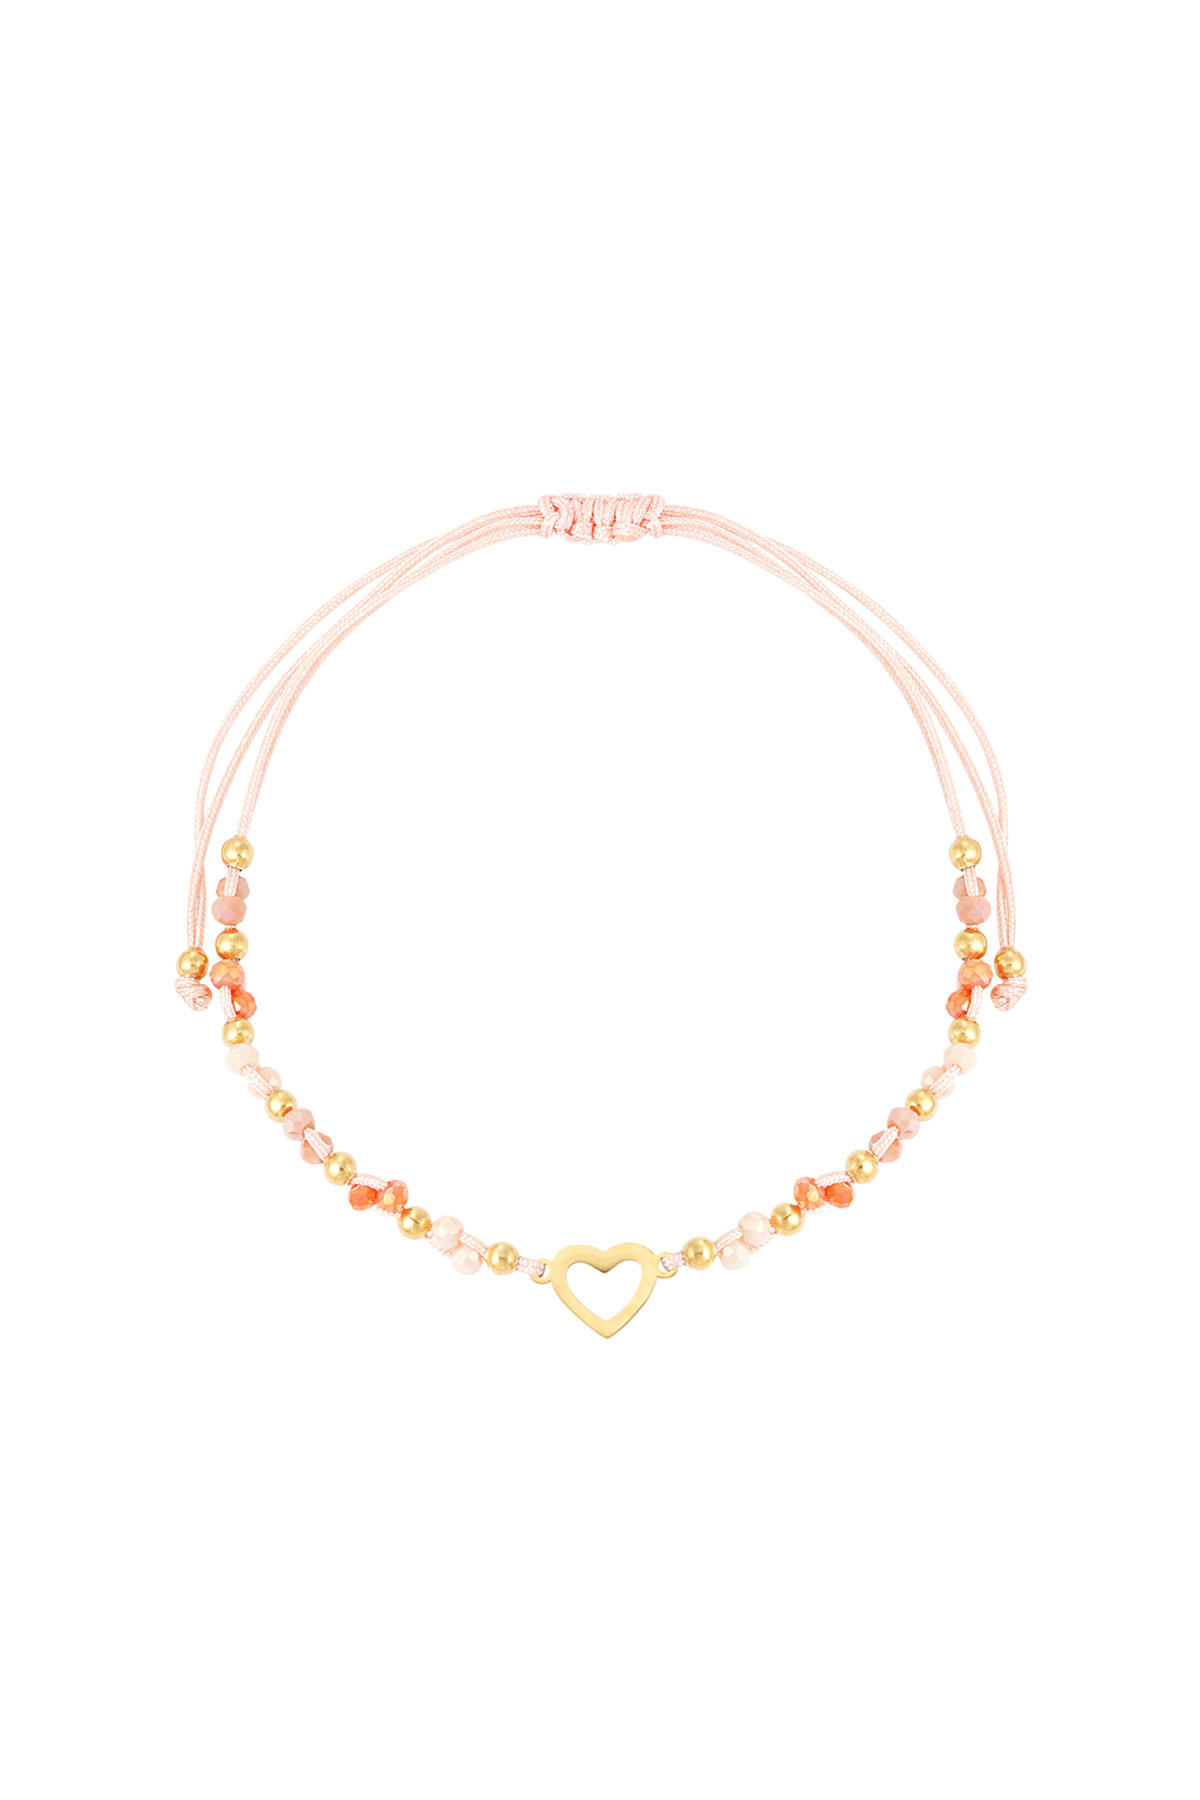 Summer bracelet colorful heart - orange gold